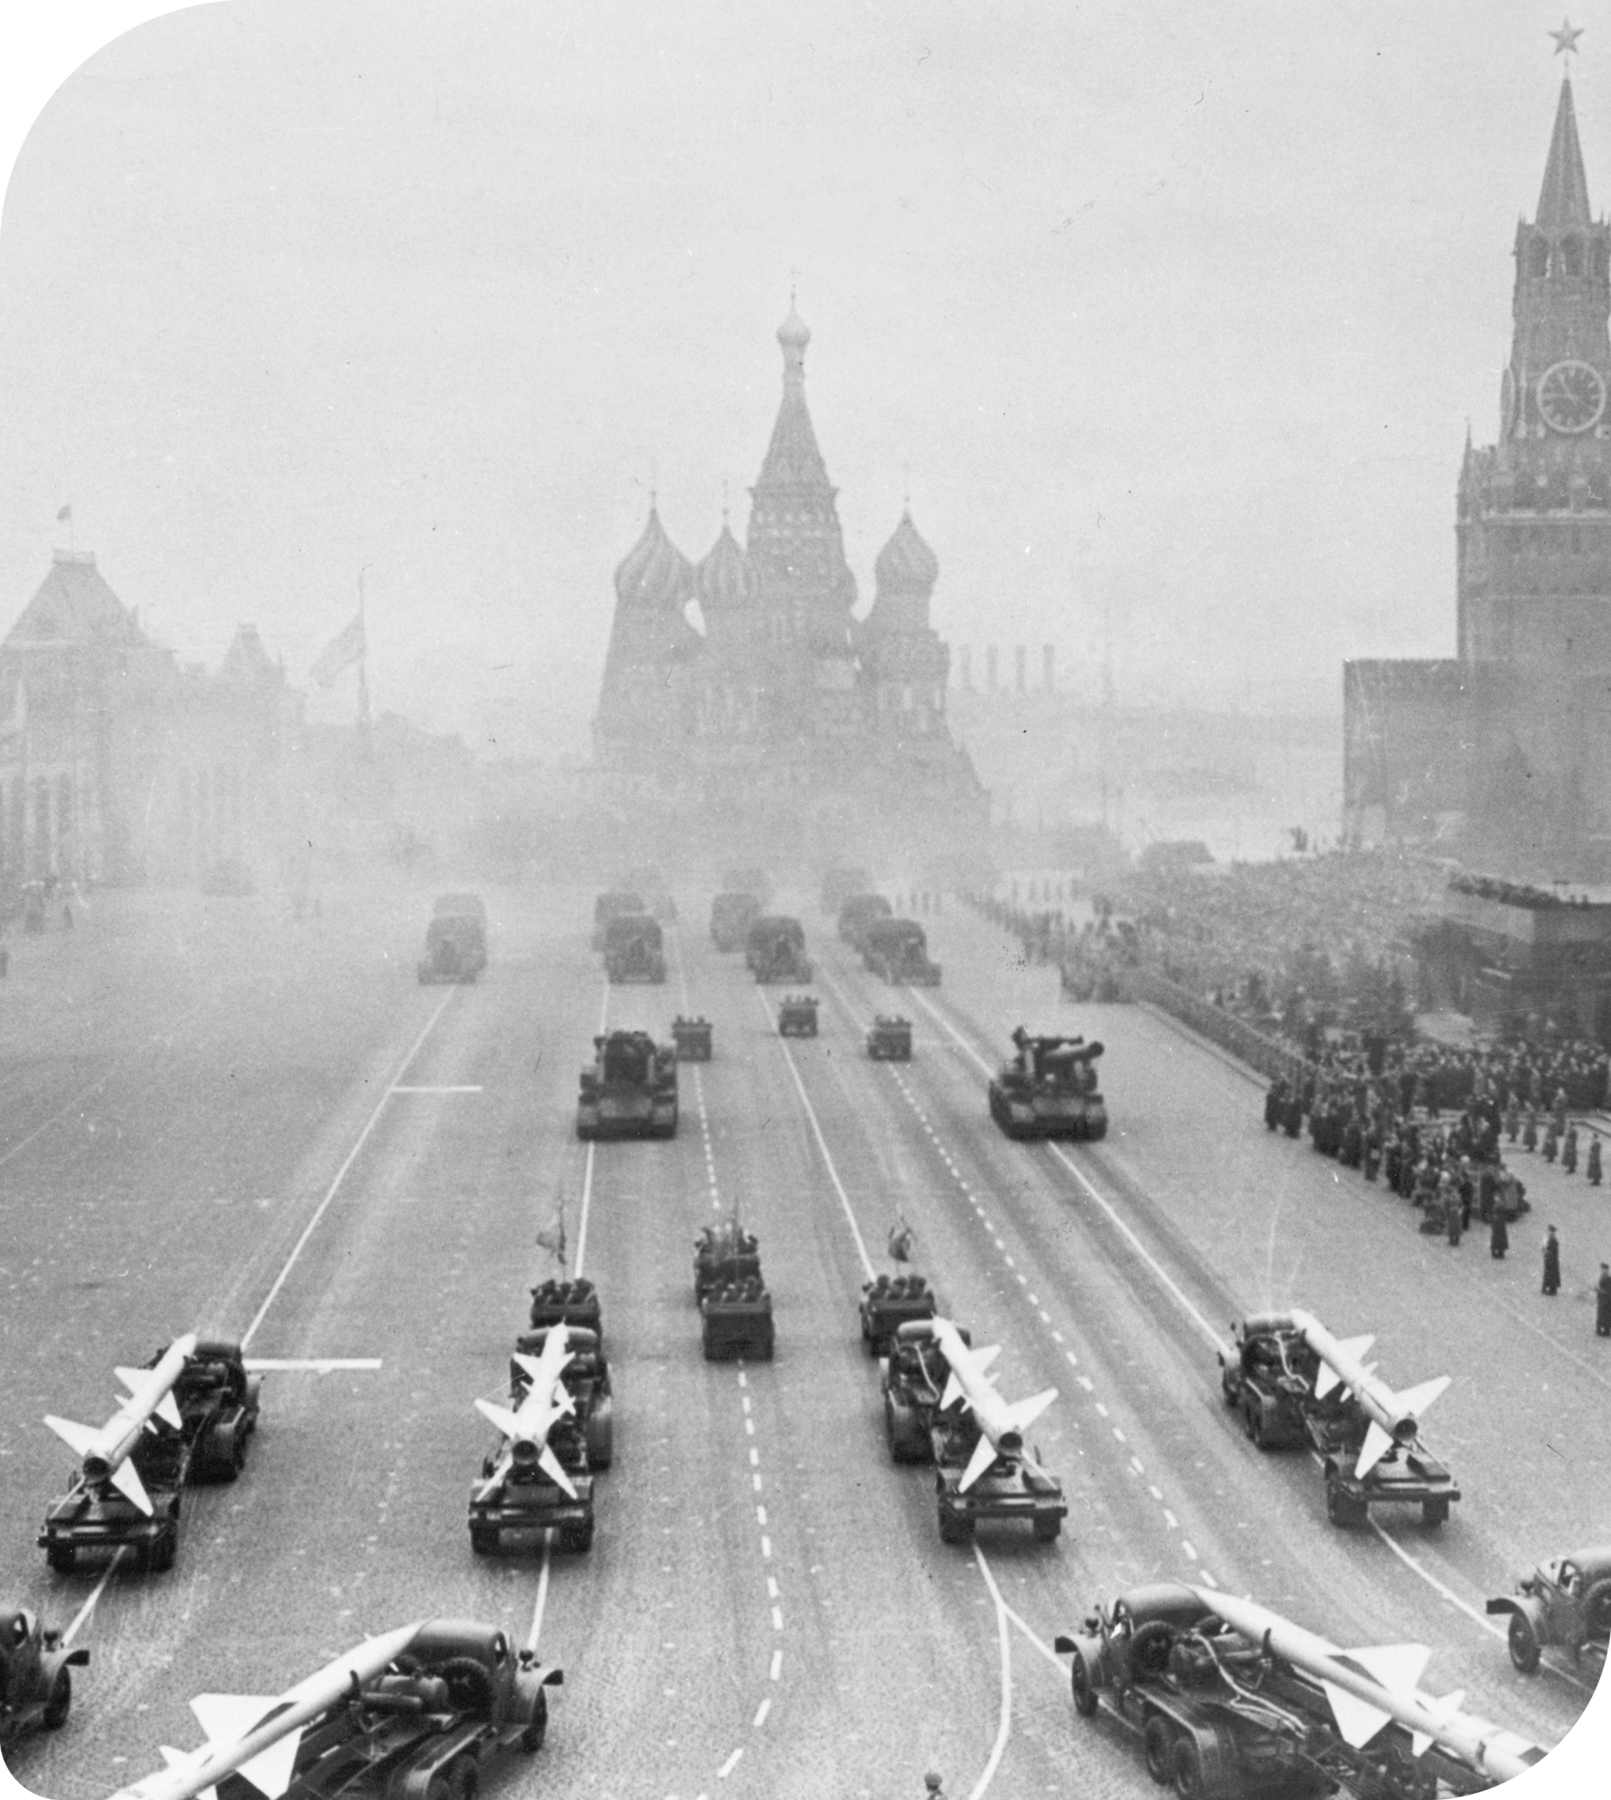 Fotografia em preto e branco. Vista de uma avenida. Nela, há vários caminhões carregando mísseis e tanques de guerra. Ao fundo, a silhueta de um castelo com várias torres arredondadas. À direita, várias pessoas assistindo ao desfile.